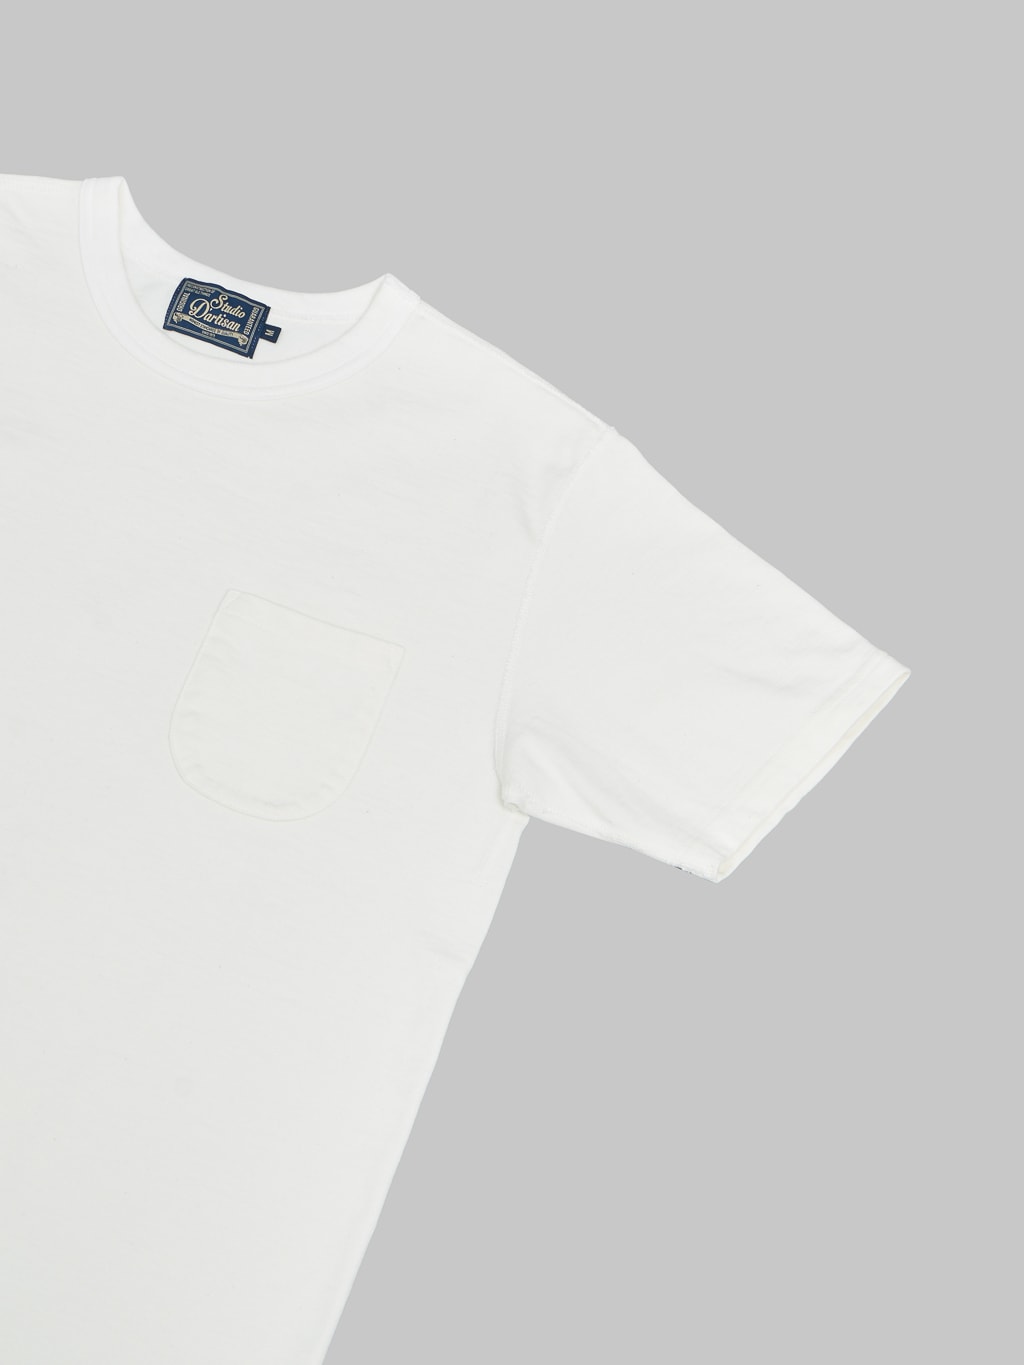 Studio DArtisan Suvin Gold Loopwheeled Tshirt white sleeve